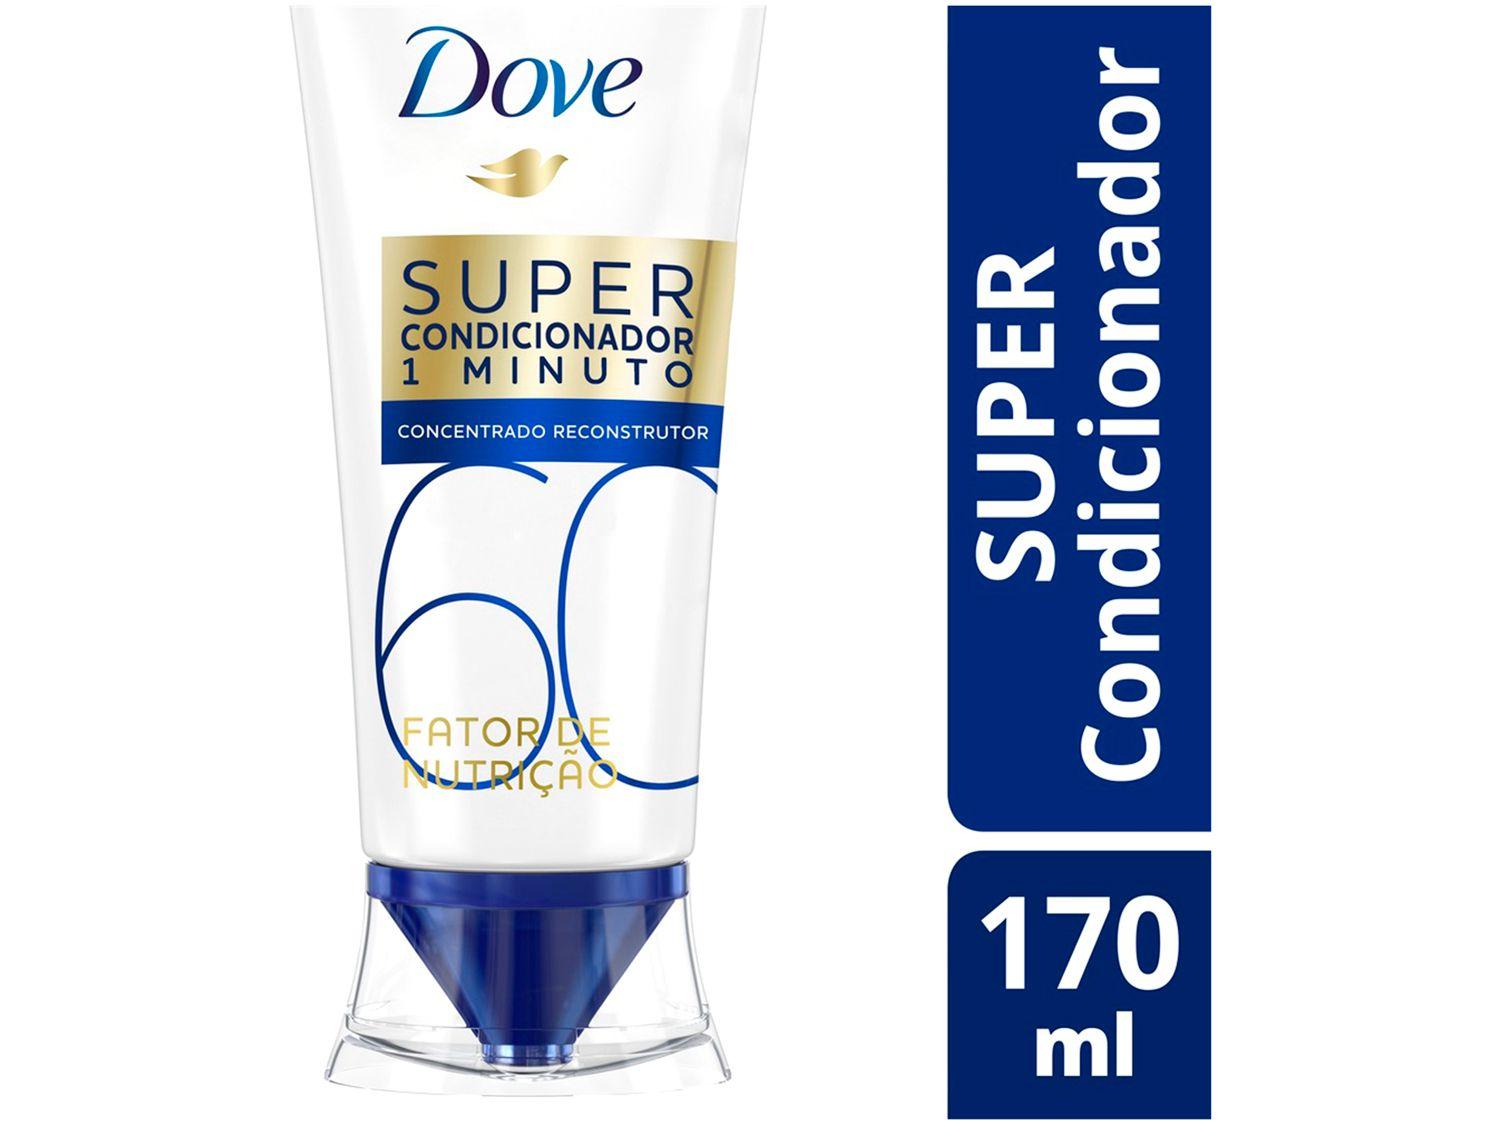 Super Condicionador 1 minuto Dove - Fator de Nutrição 60 170ml